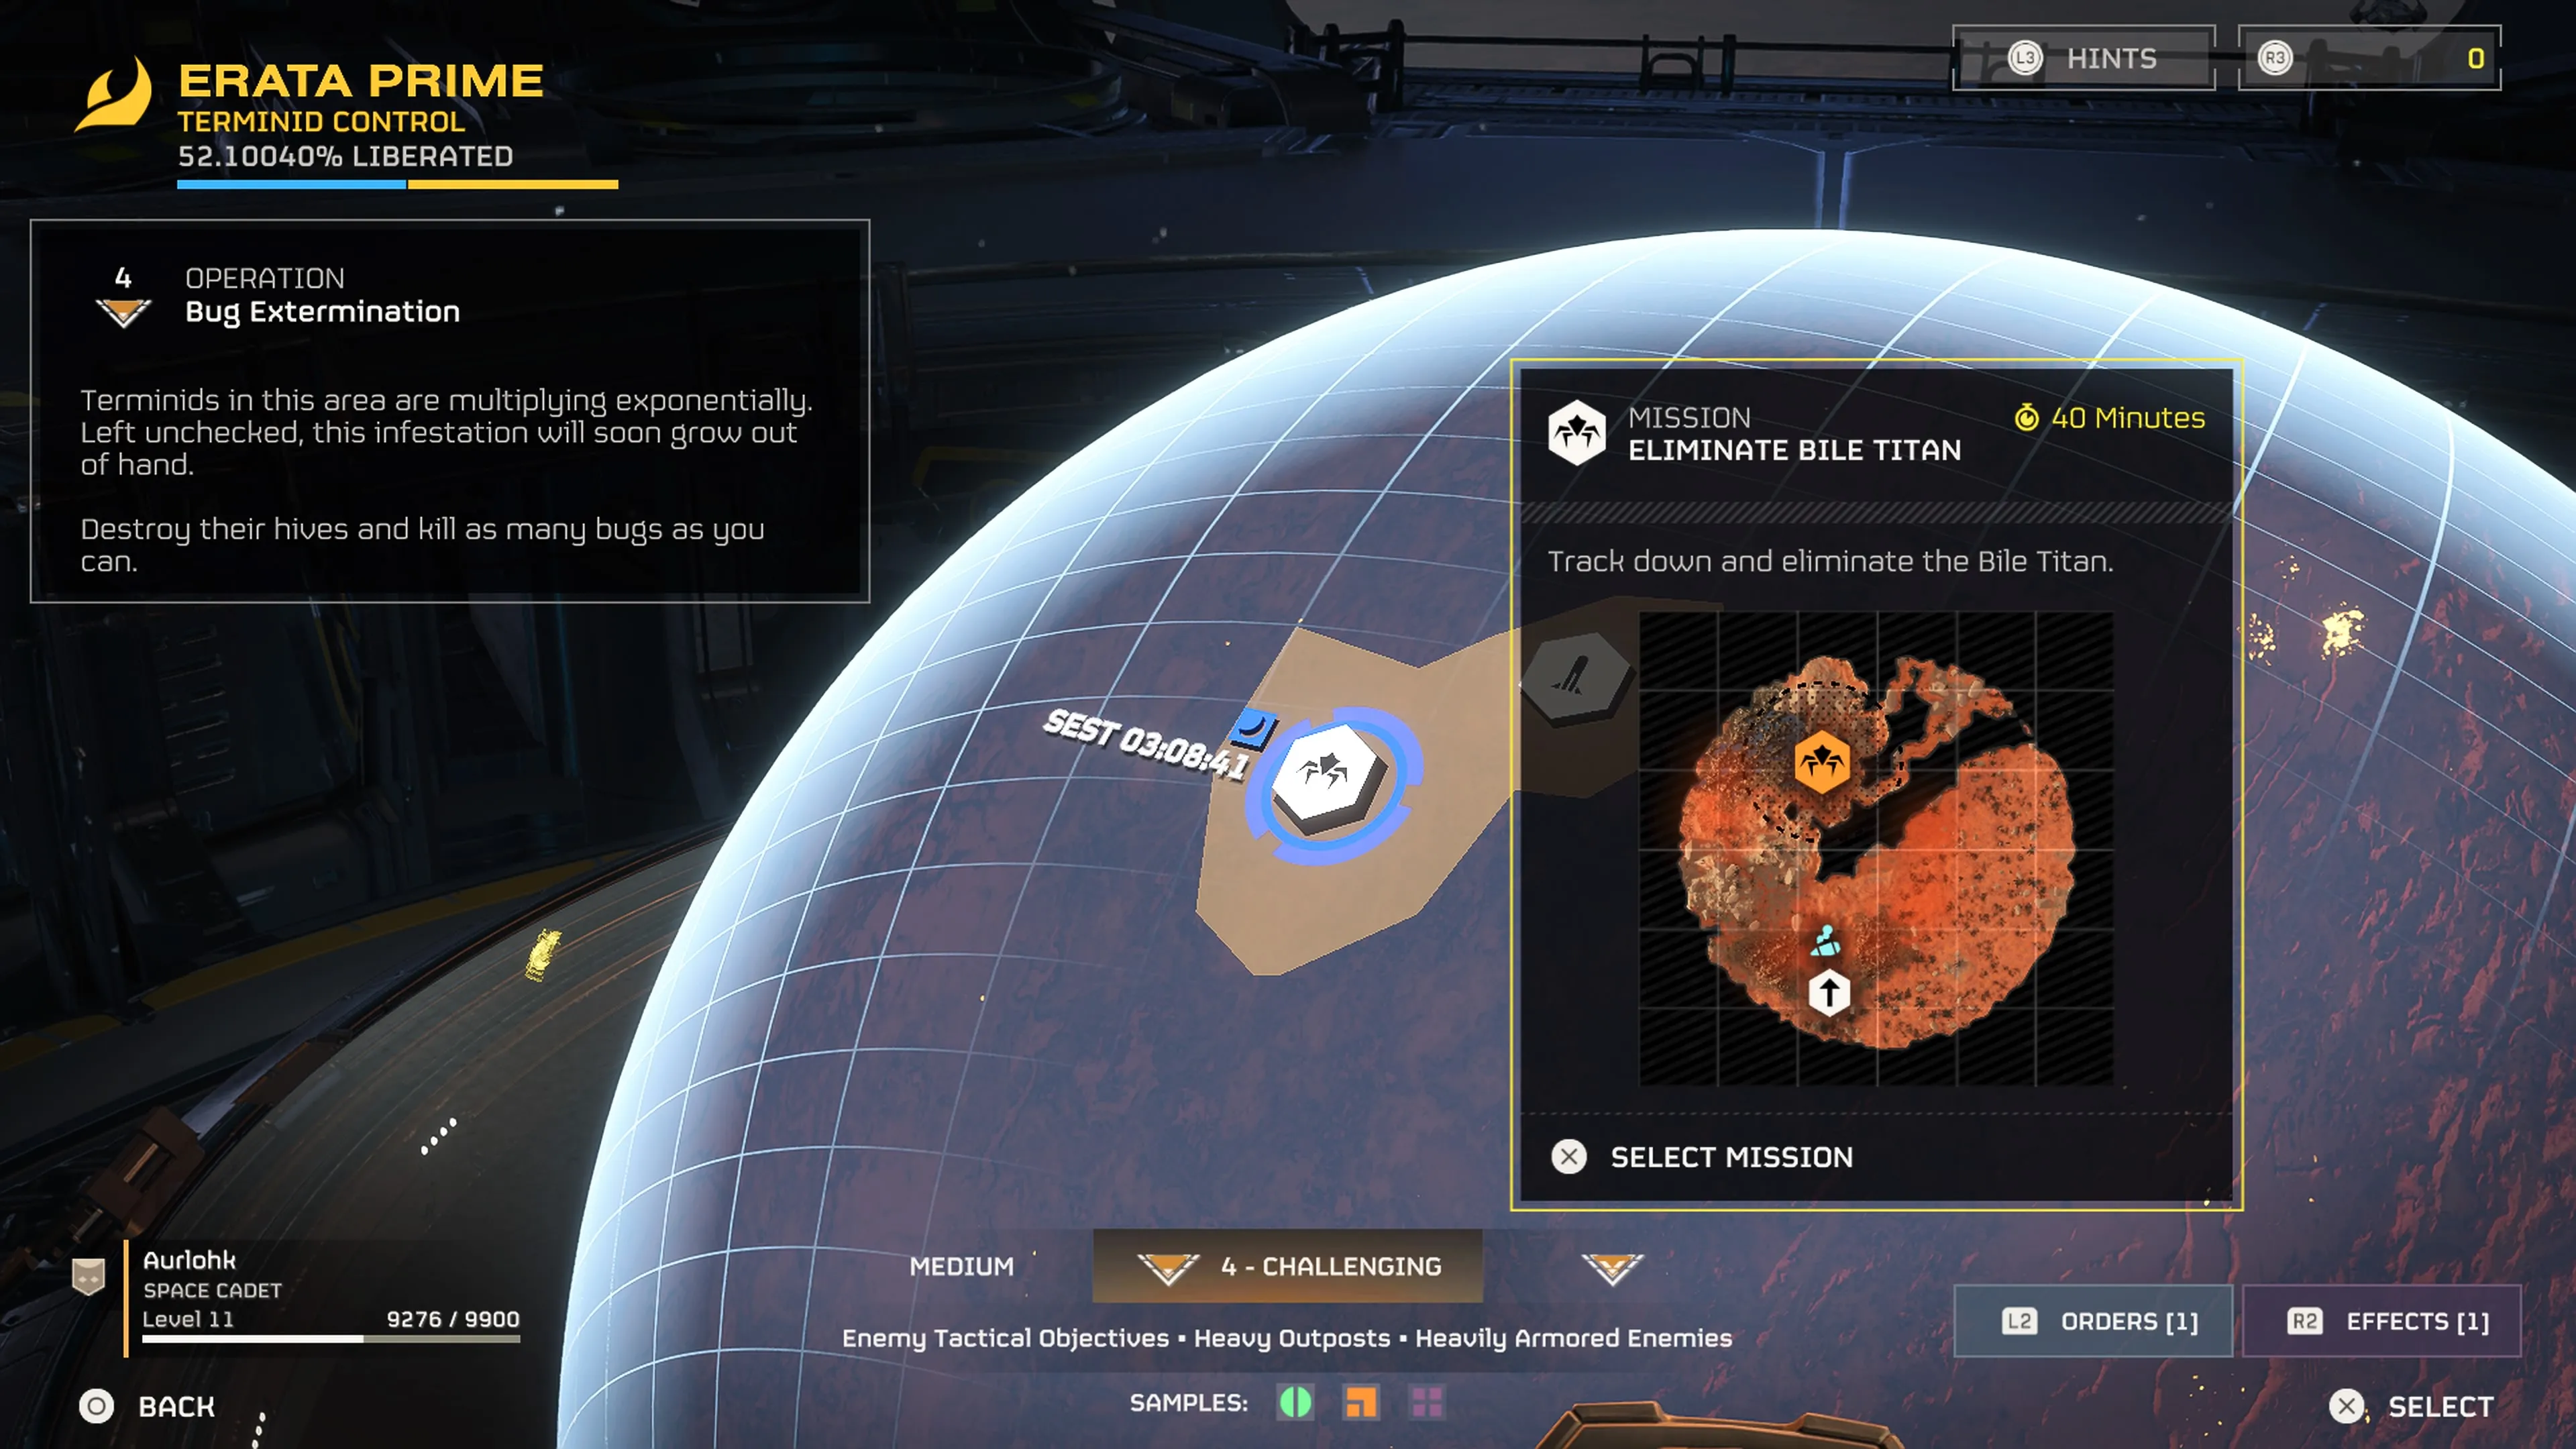 Visuale ingrandita della Mappa Galattica centrata sul pianeta Erata Prime e una missione per eliminare un Titano Bile in Helldivers 2.